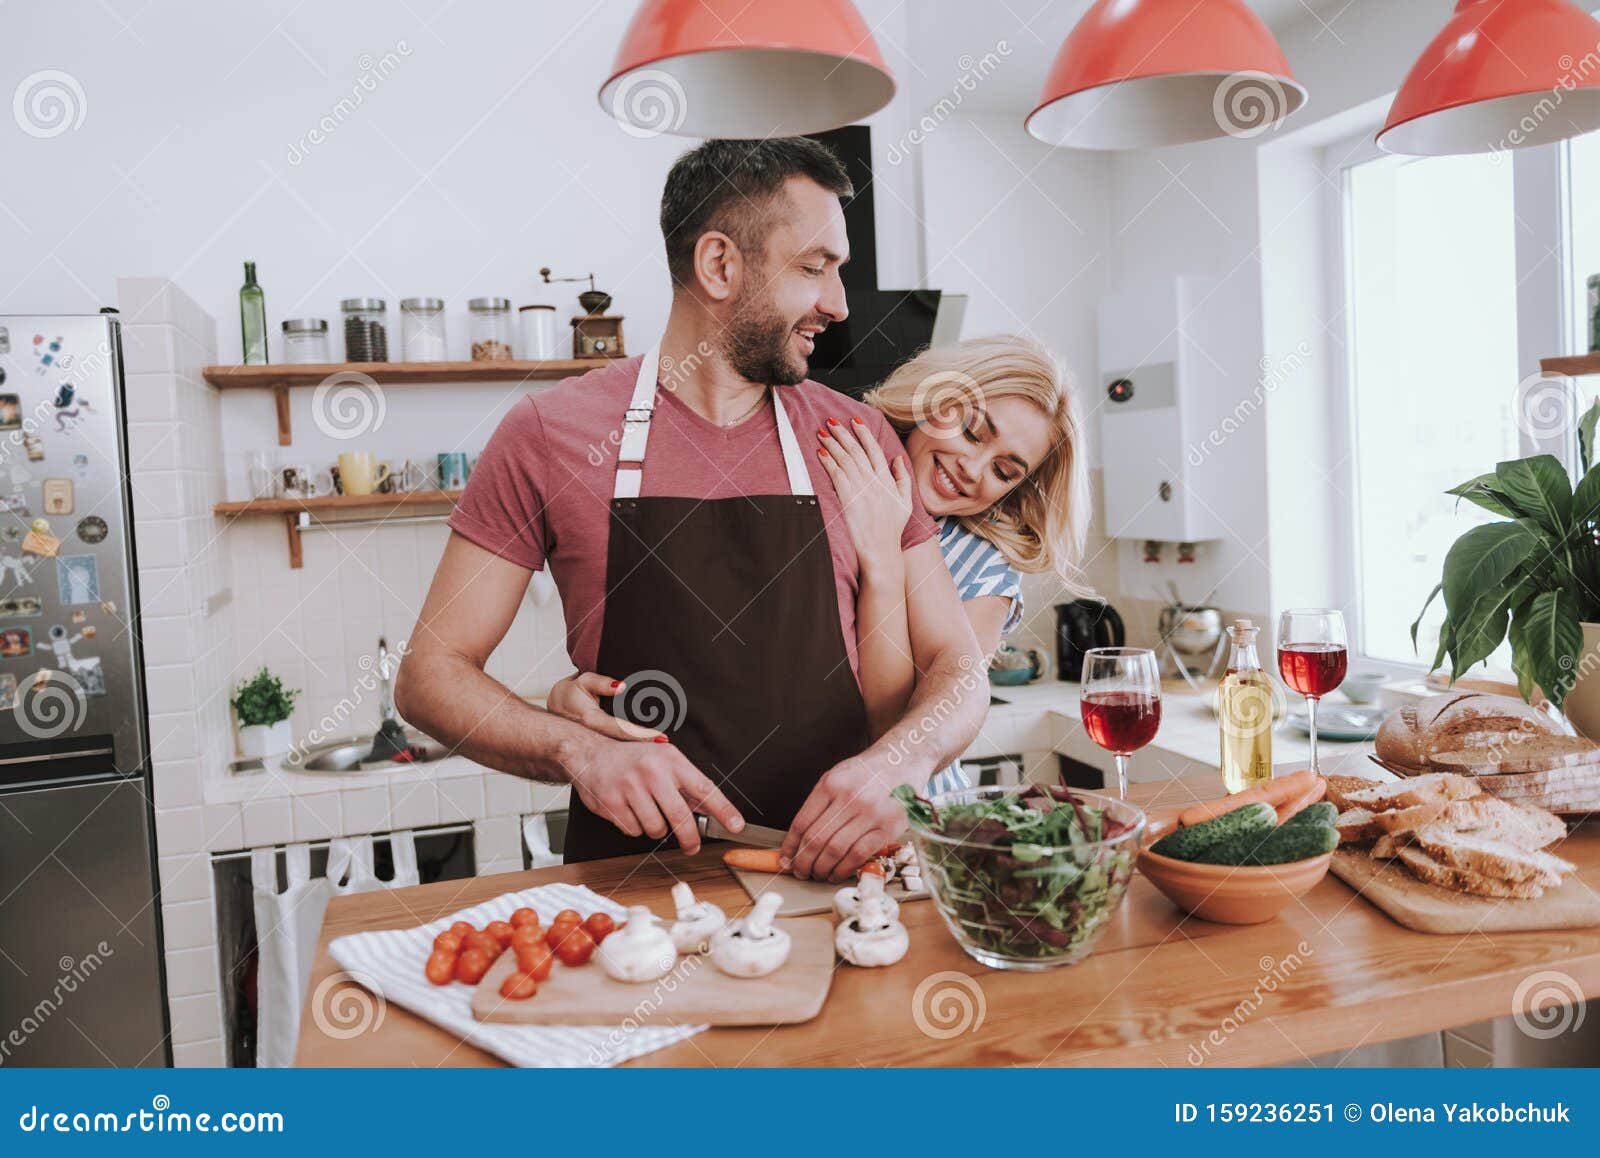 Пока жена готовит муж. Муж готовит ужин. Муж обнимает жену на кухне. Мужчина готовит женщина обнимает. Мужчина готовит на кухне женщина обнимает.